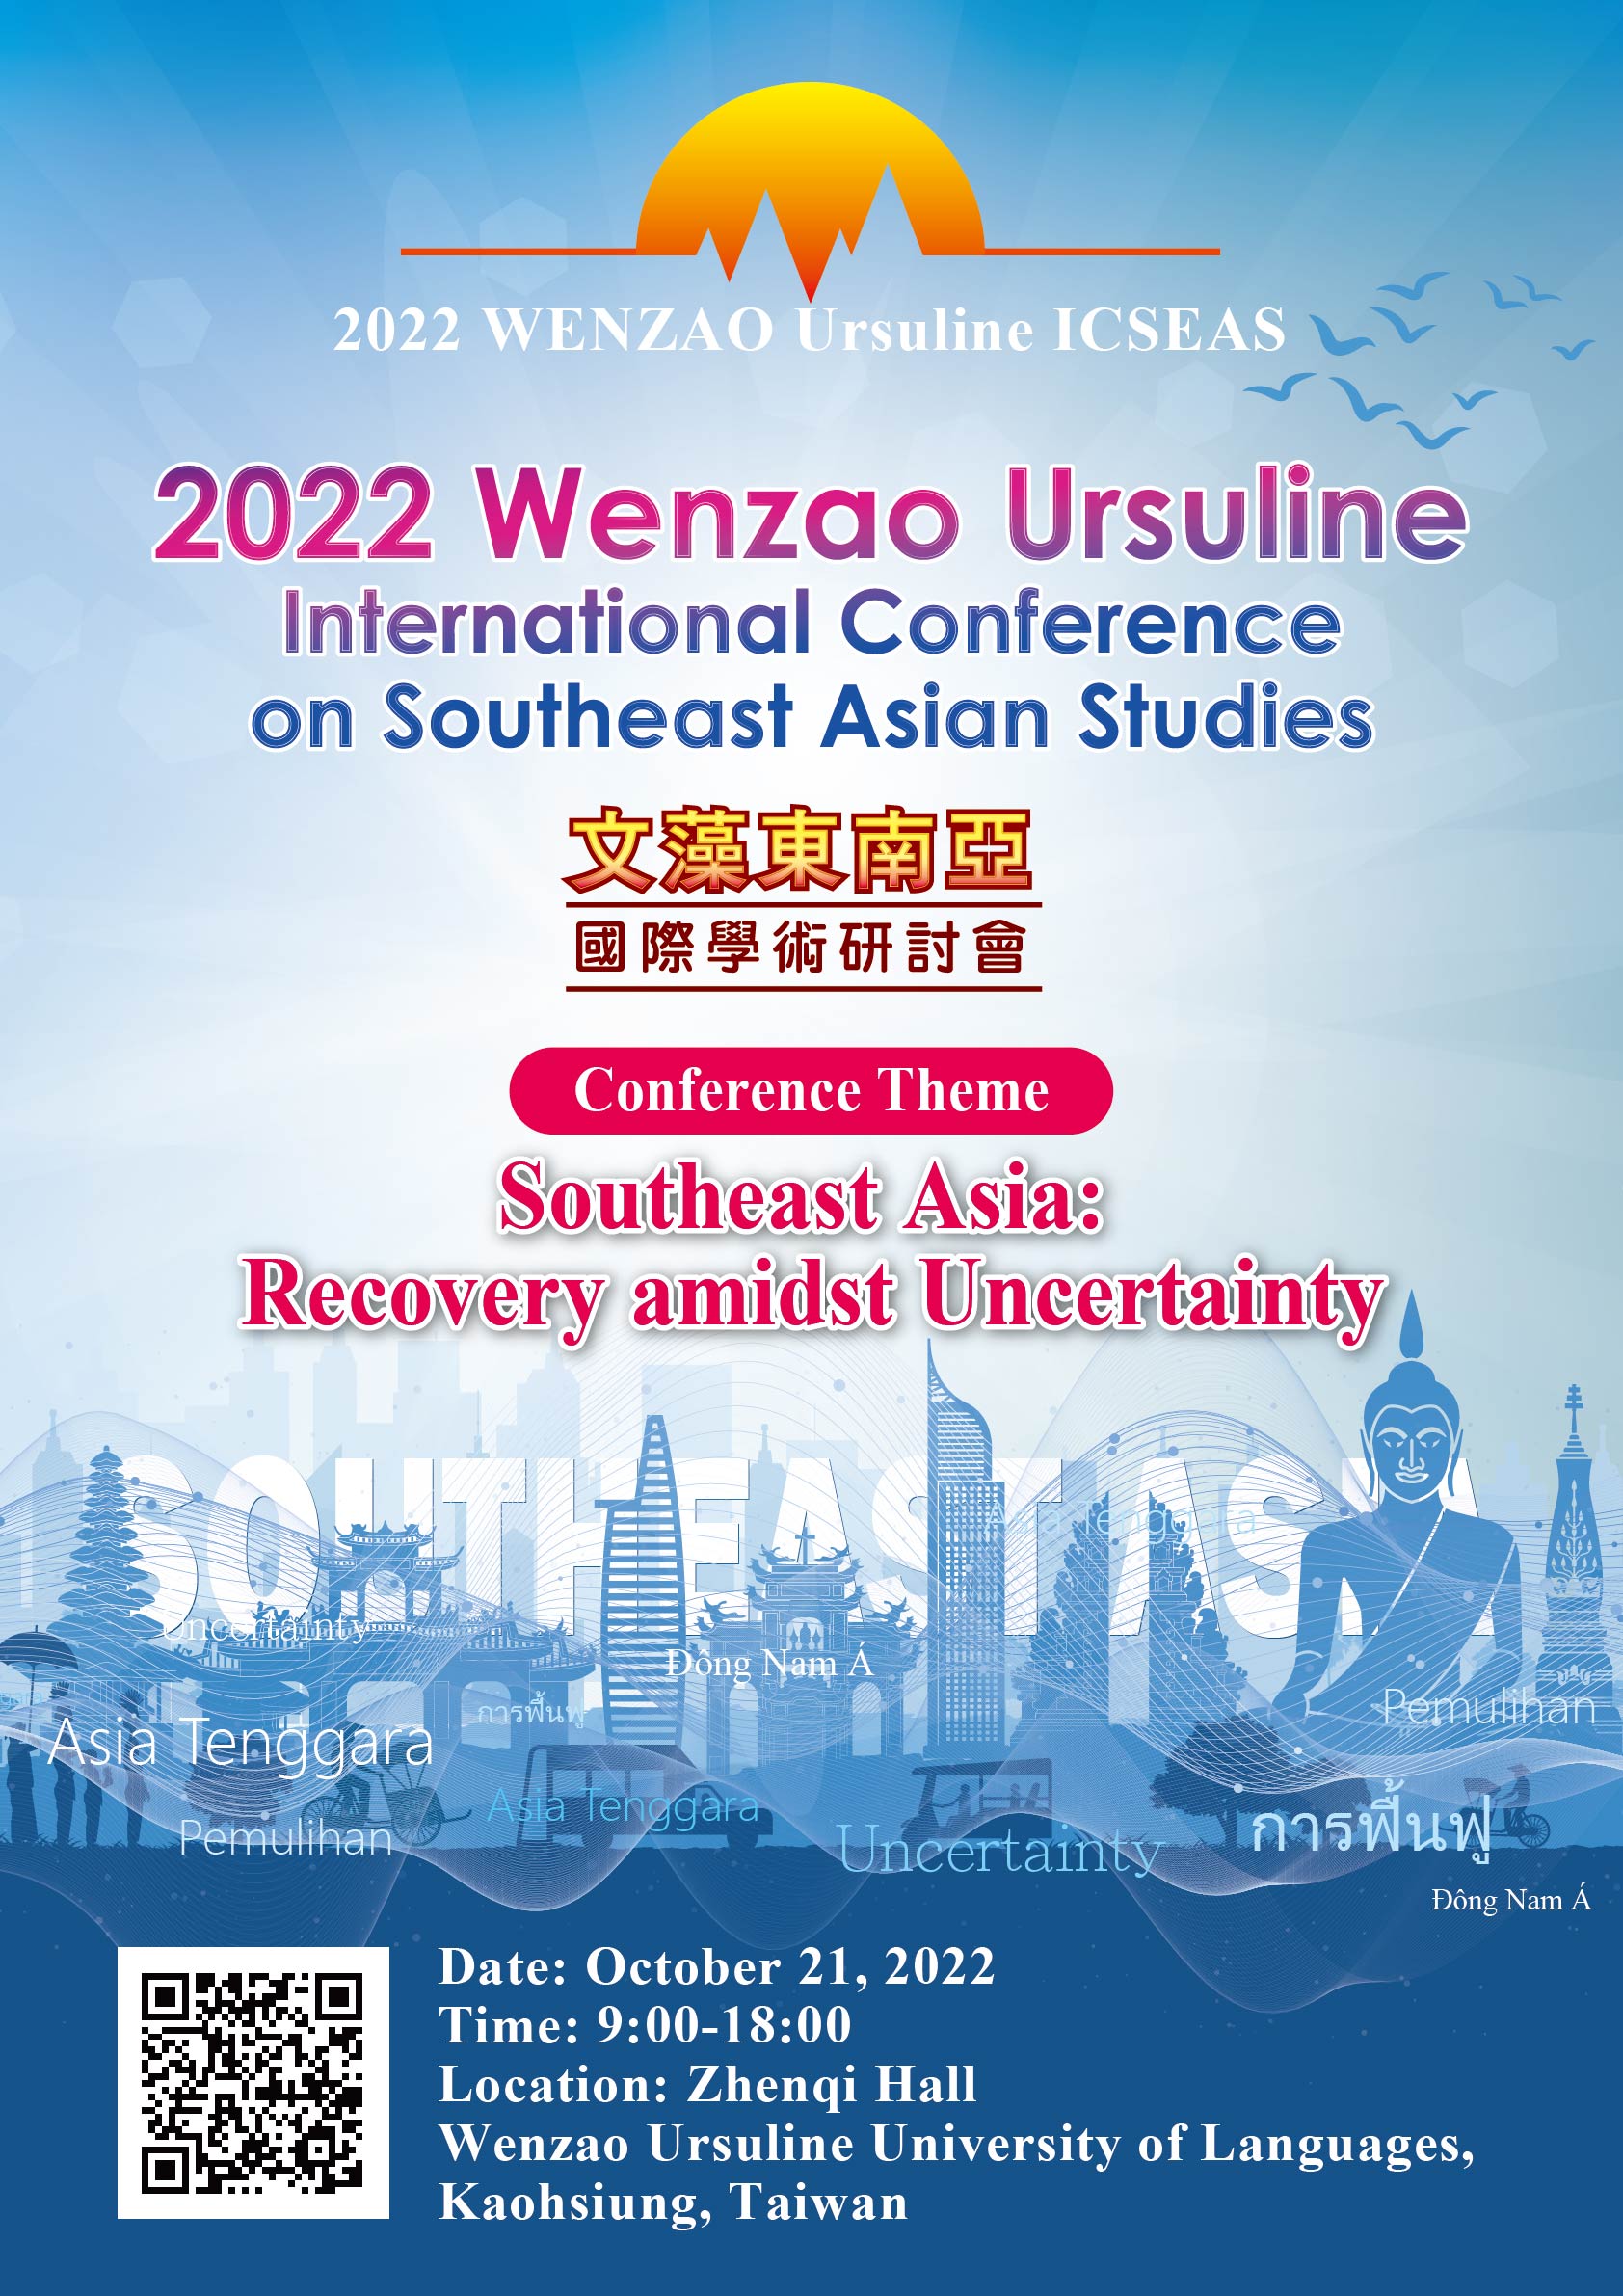 2022 文藻東南亞國際學術會議 Wenzao Ursuline ICSEAS on Oct.21